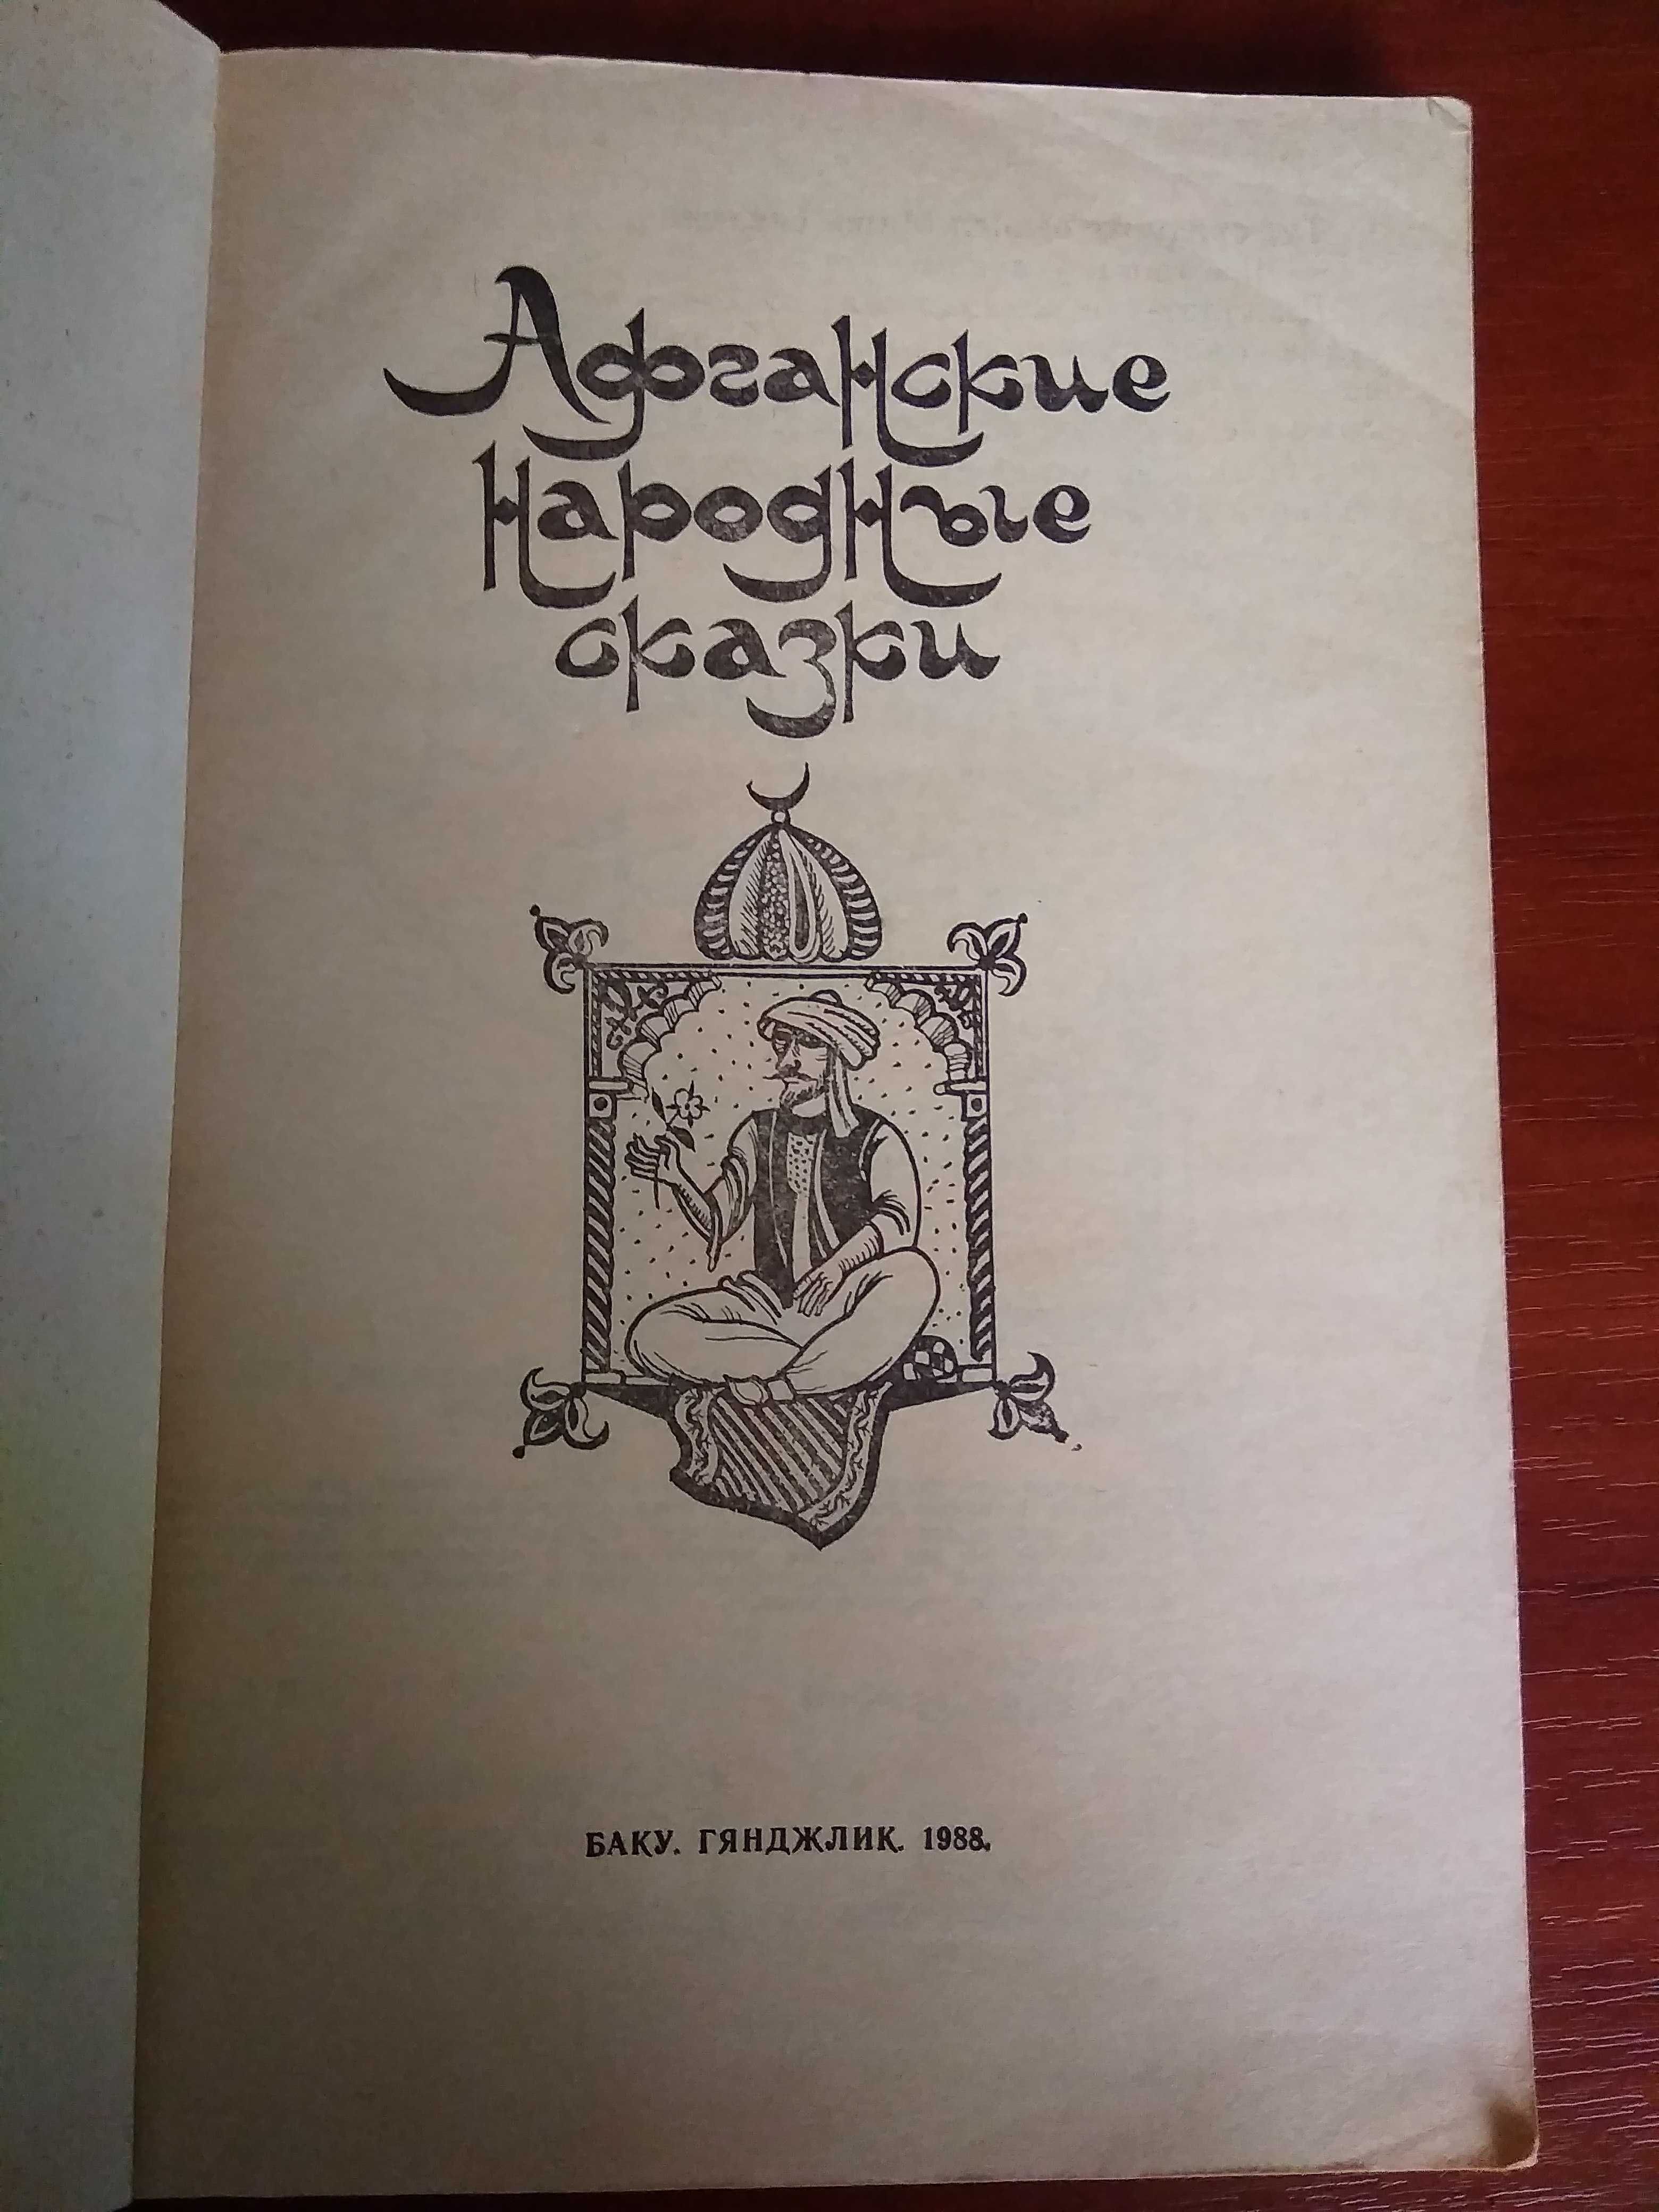 Афганские народные сказки, Баку, Гянджлик, 1988, 190 стр.